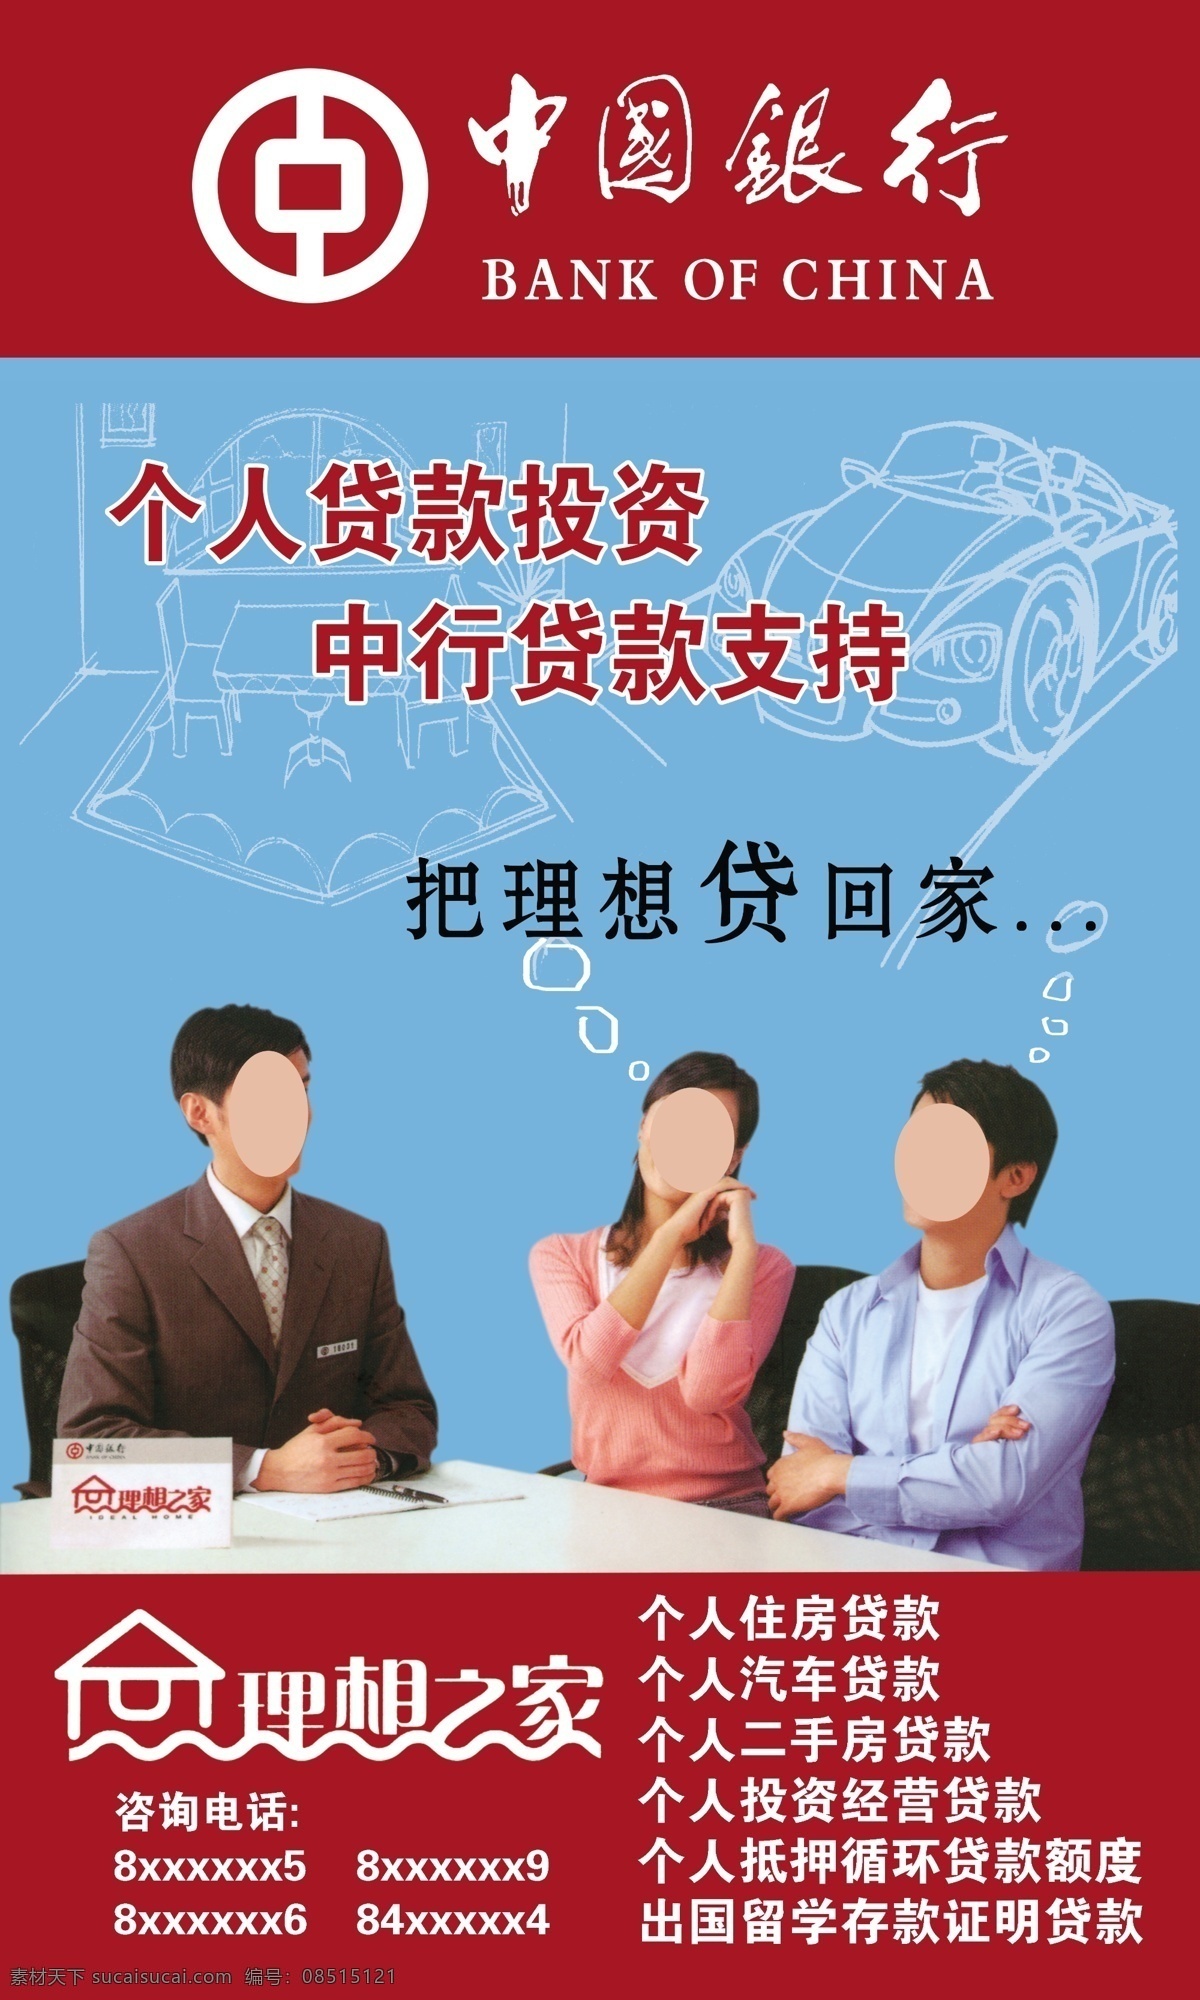 银行海报图片 银行海报 银行宣传单 金融海报 中国银行 理想之家 线型汽车